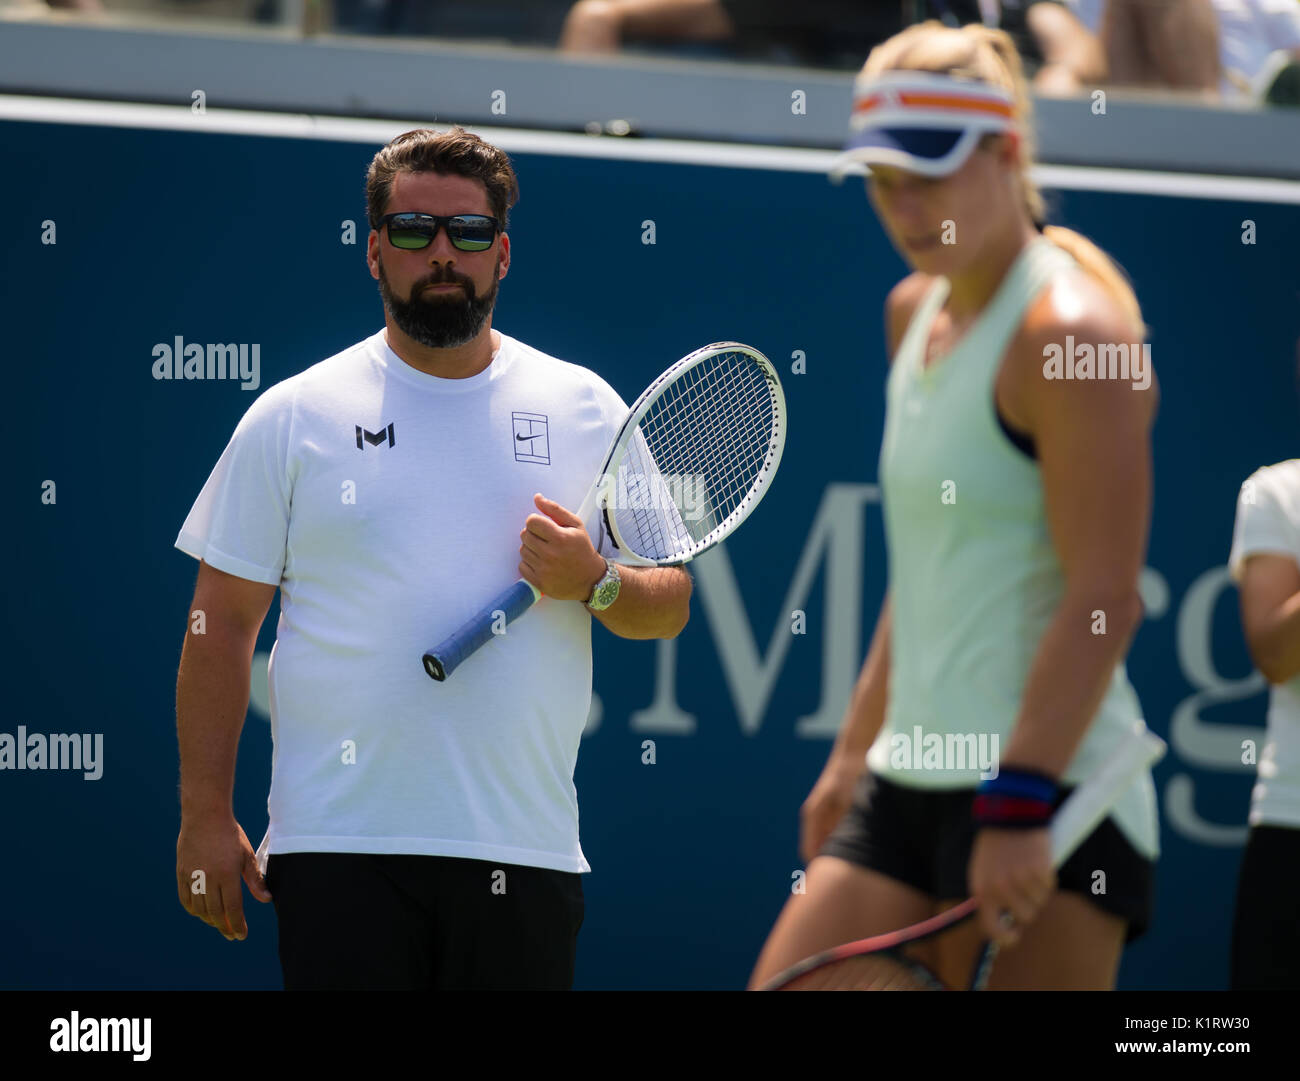 New York City, United States. 27 août, 2017. Benjamin Ebrahimzadeh à l'US Open 2017 tournoi de Grand Slam Tennis © Jimmie48 Photographie/Alamy Live News Banque D'Images